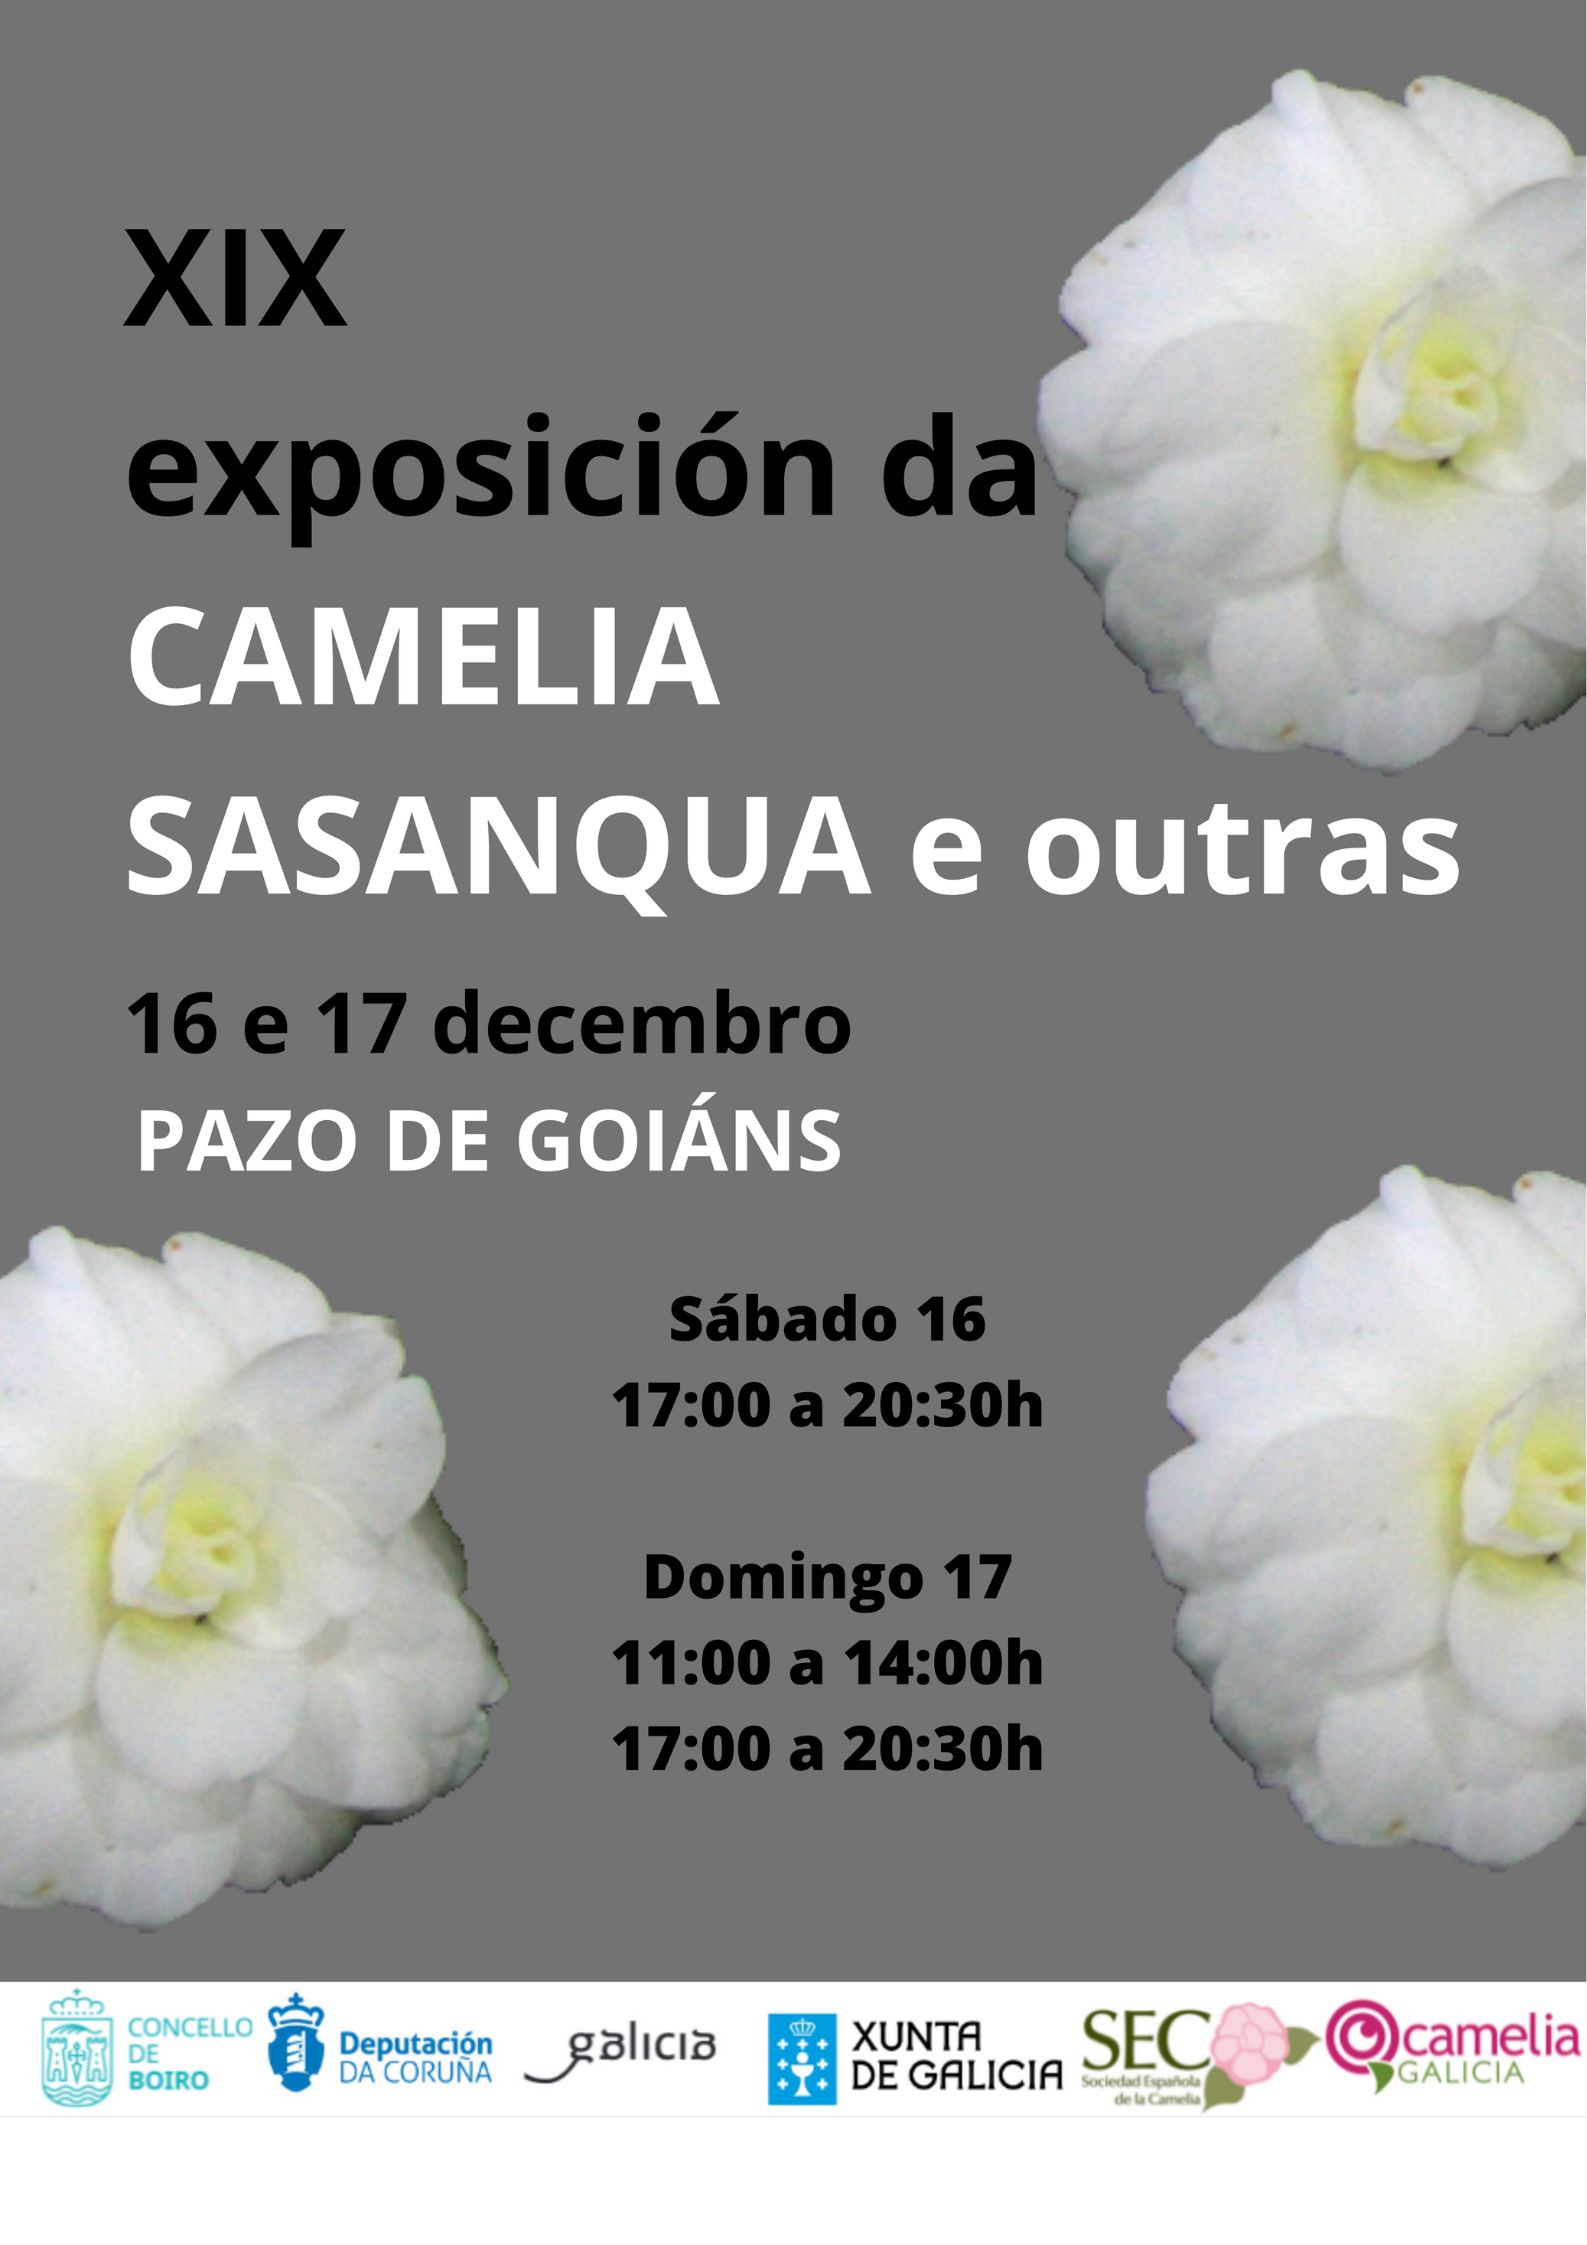 XIX exposición da Camelia Sasanqua e outras 2023 | Concello de Boiro